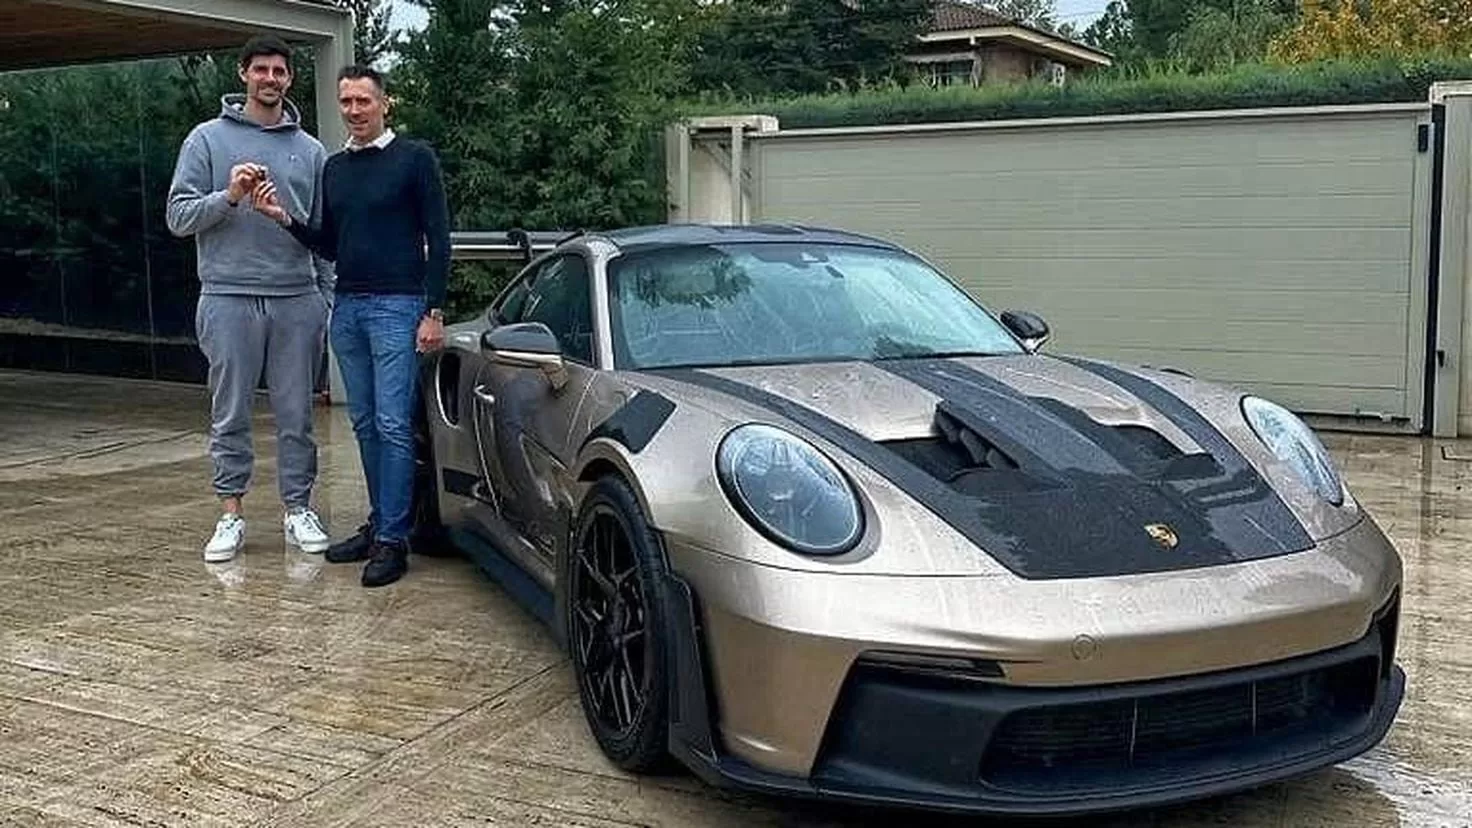 This is Thibaut Courtois' custom-made Porsche
